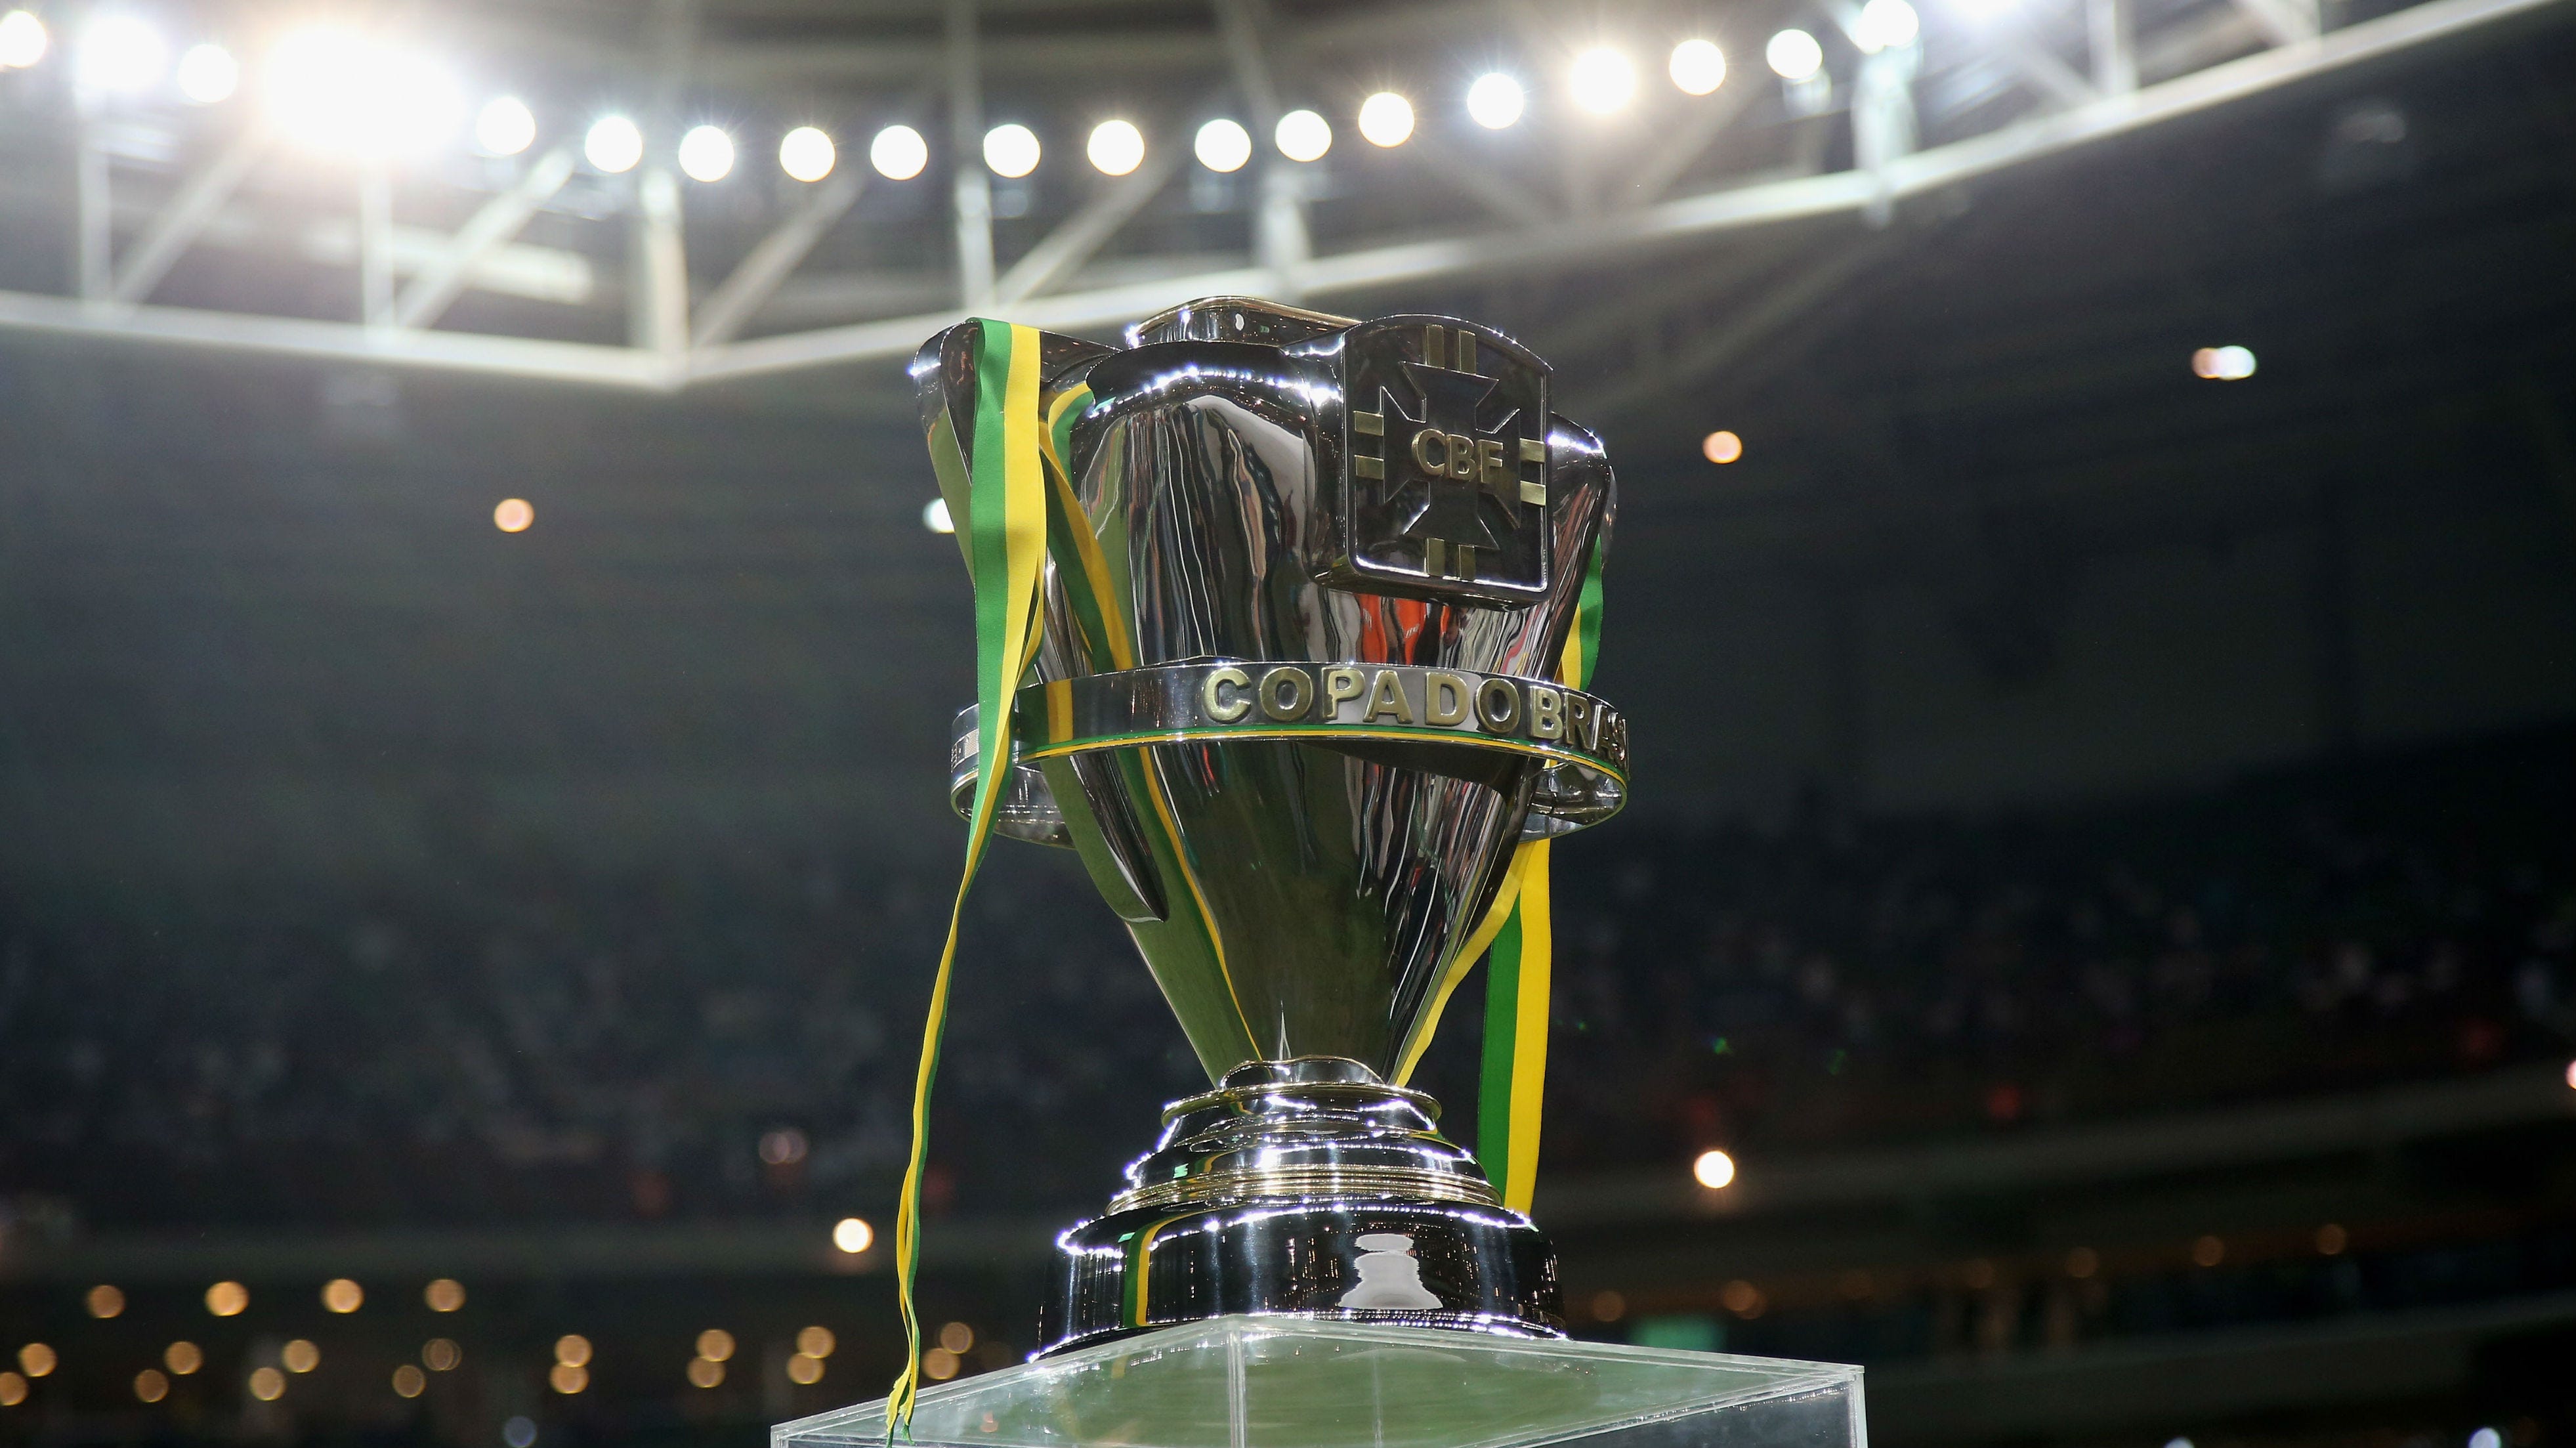 Decisão fora de casa e títulos: veja retrospecto do Flamengo em